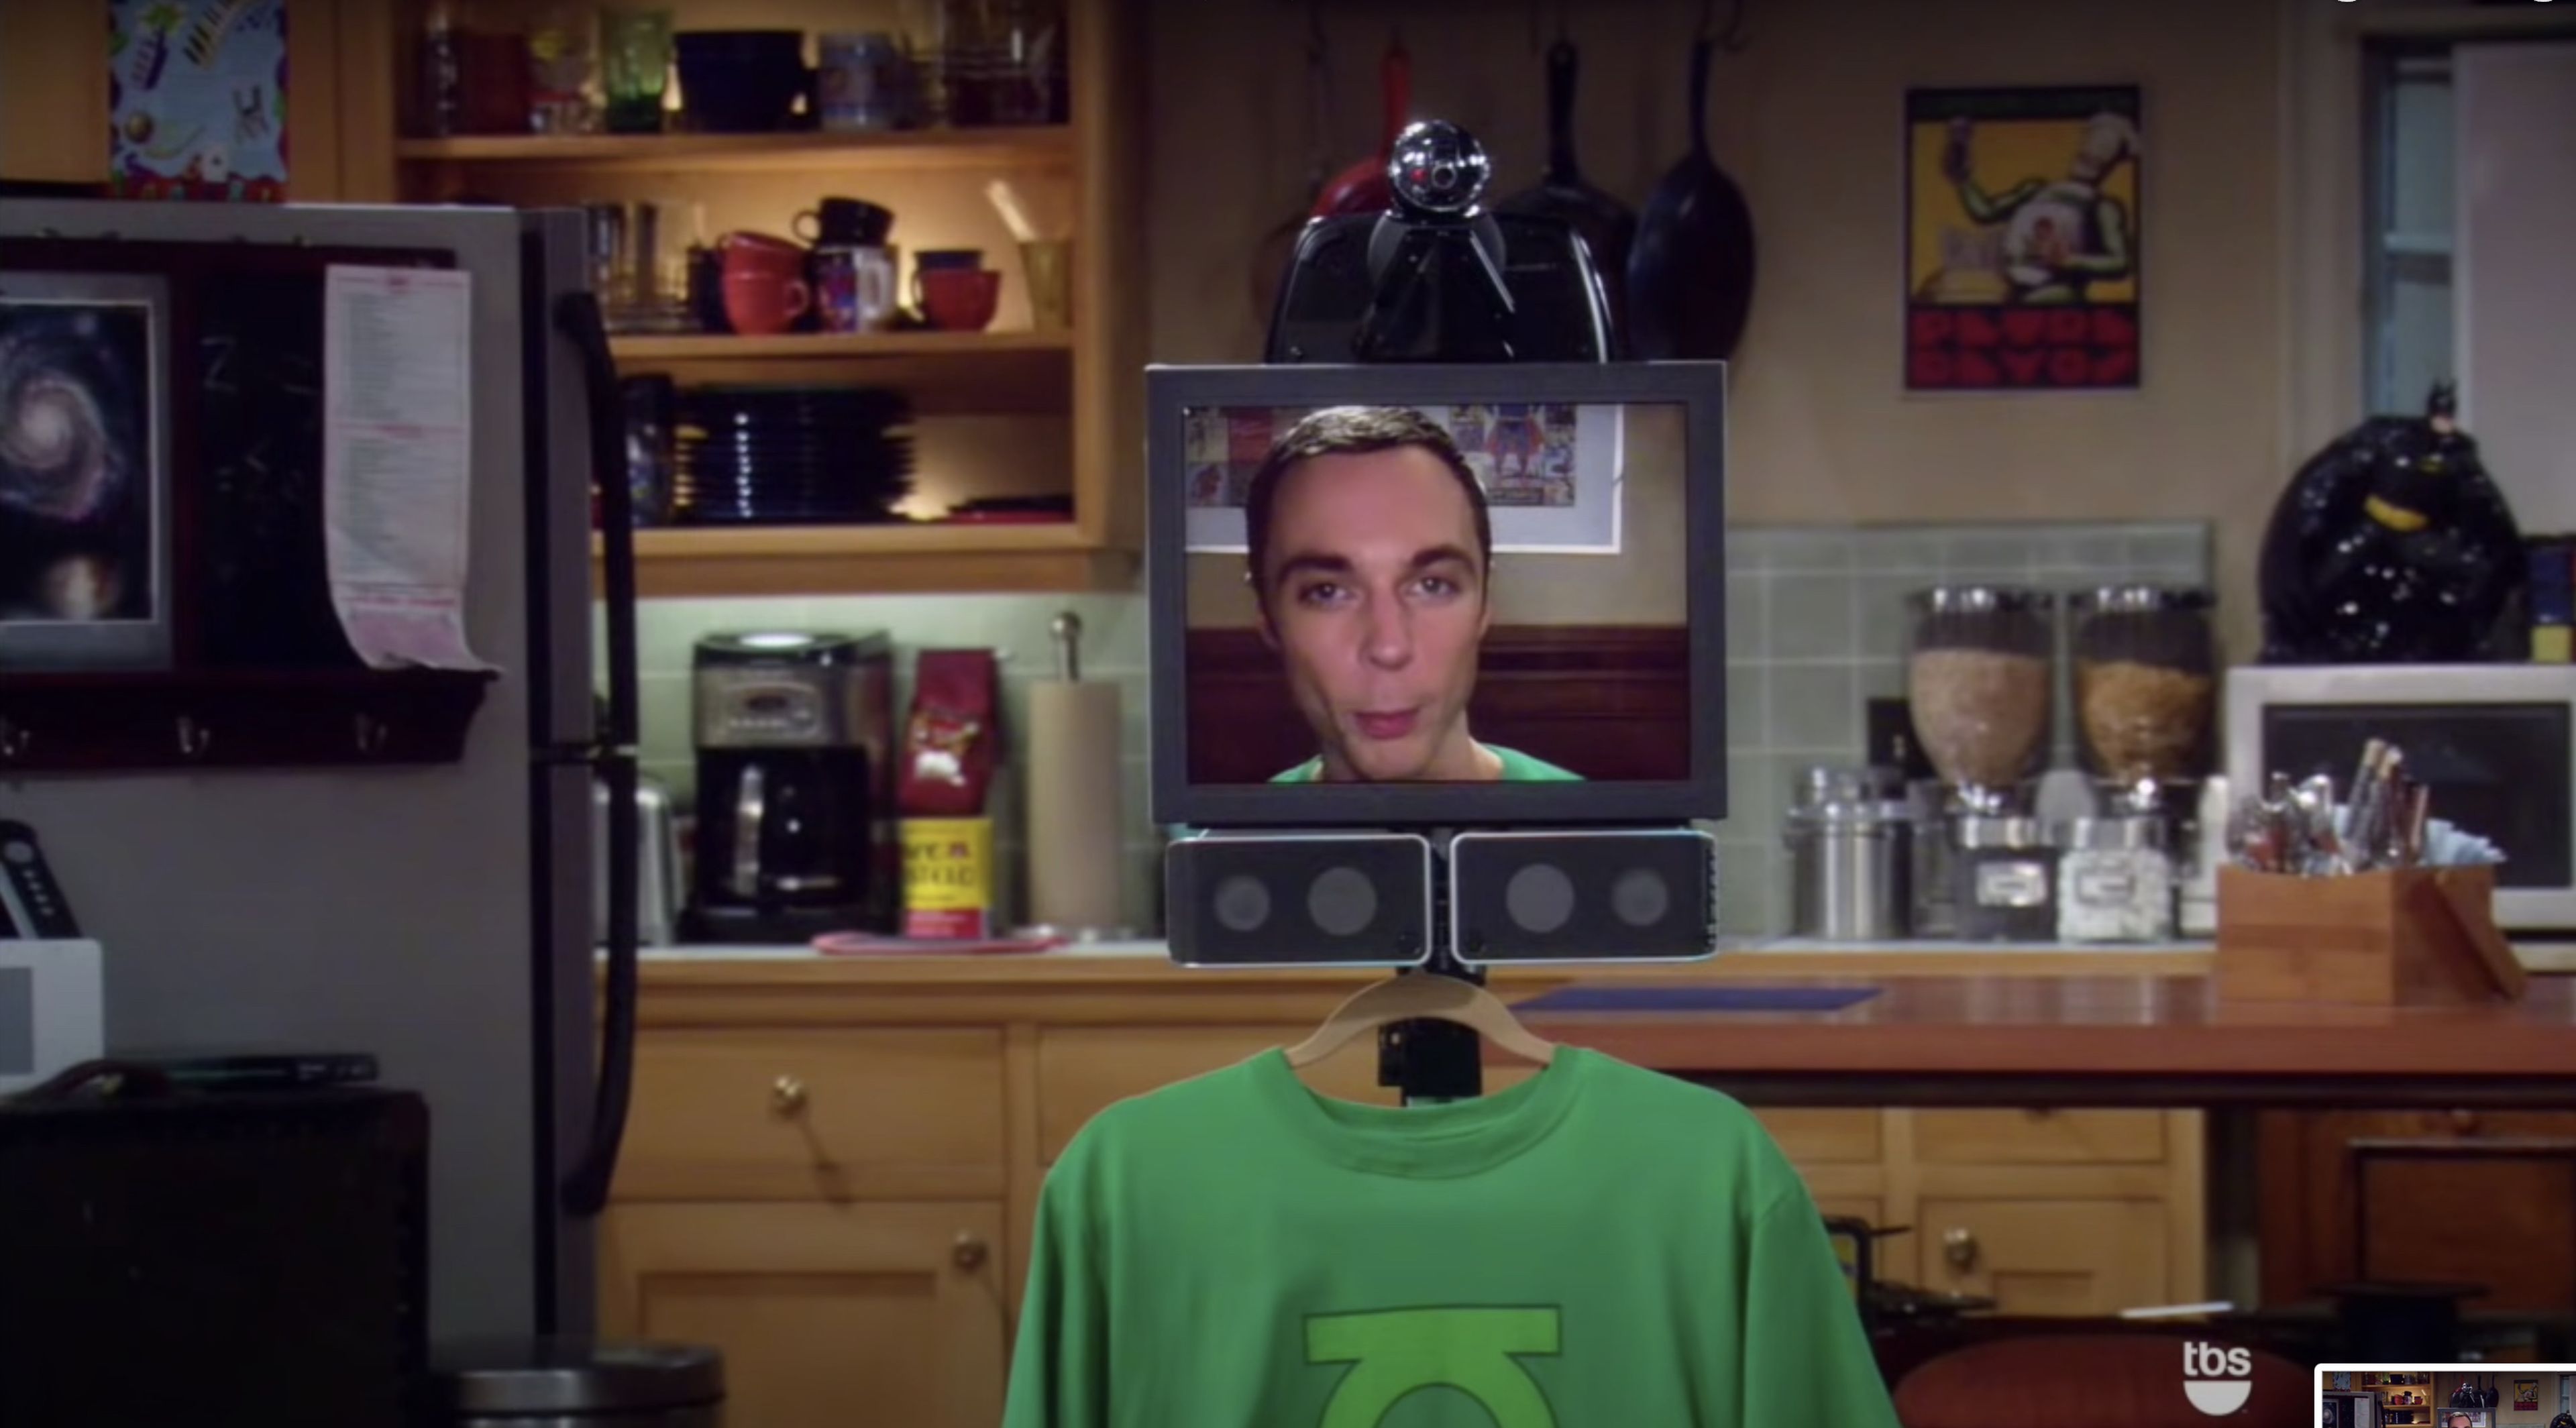 El personaje Sheldon Cooper utilizando una pantalla para comunicarse a distancia con sus amigos.